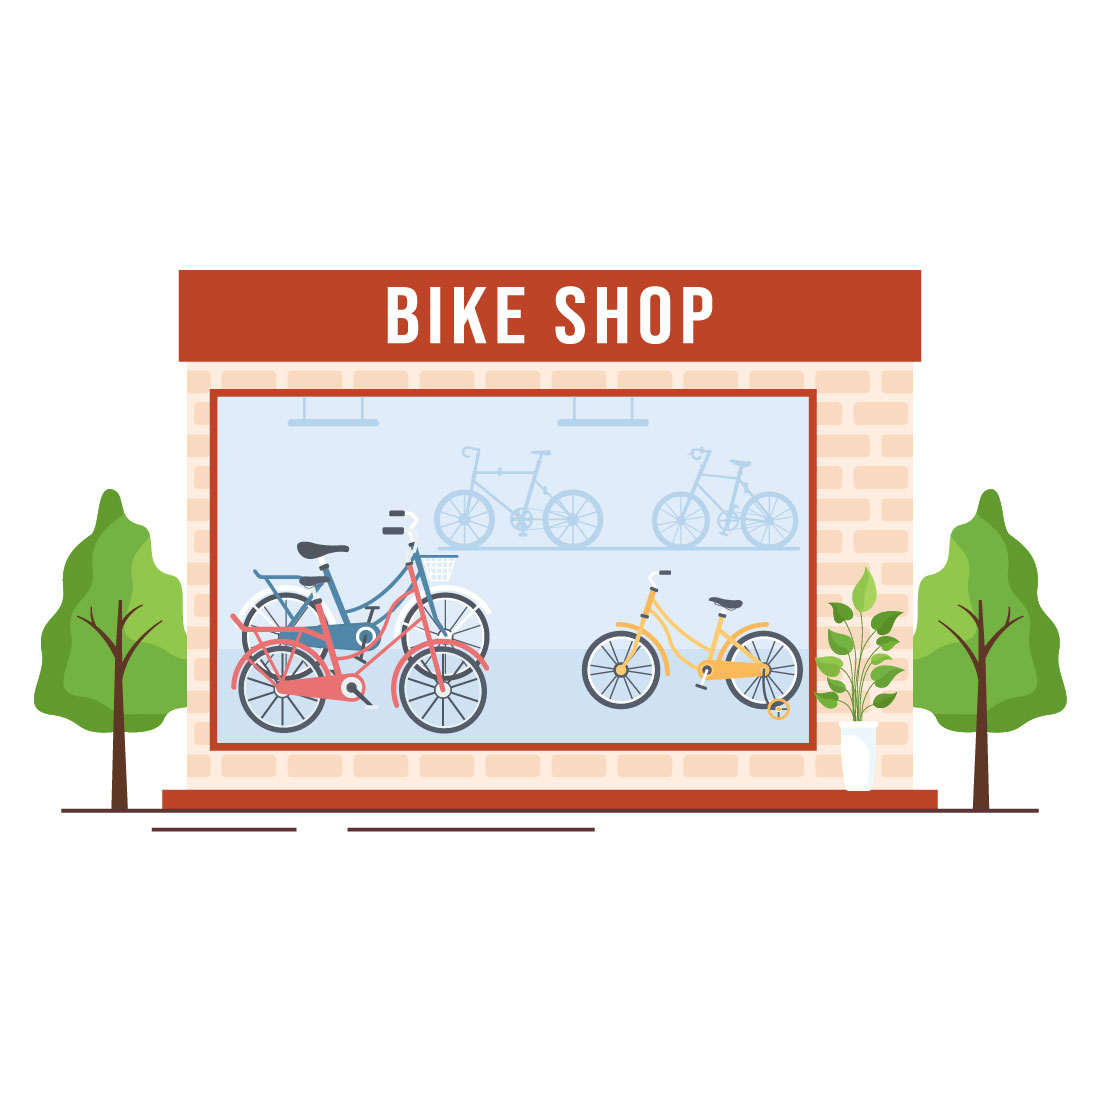 10 Bike Shop Illustration preview image.